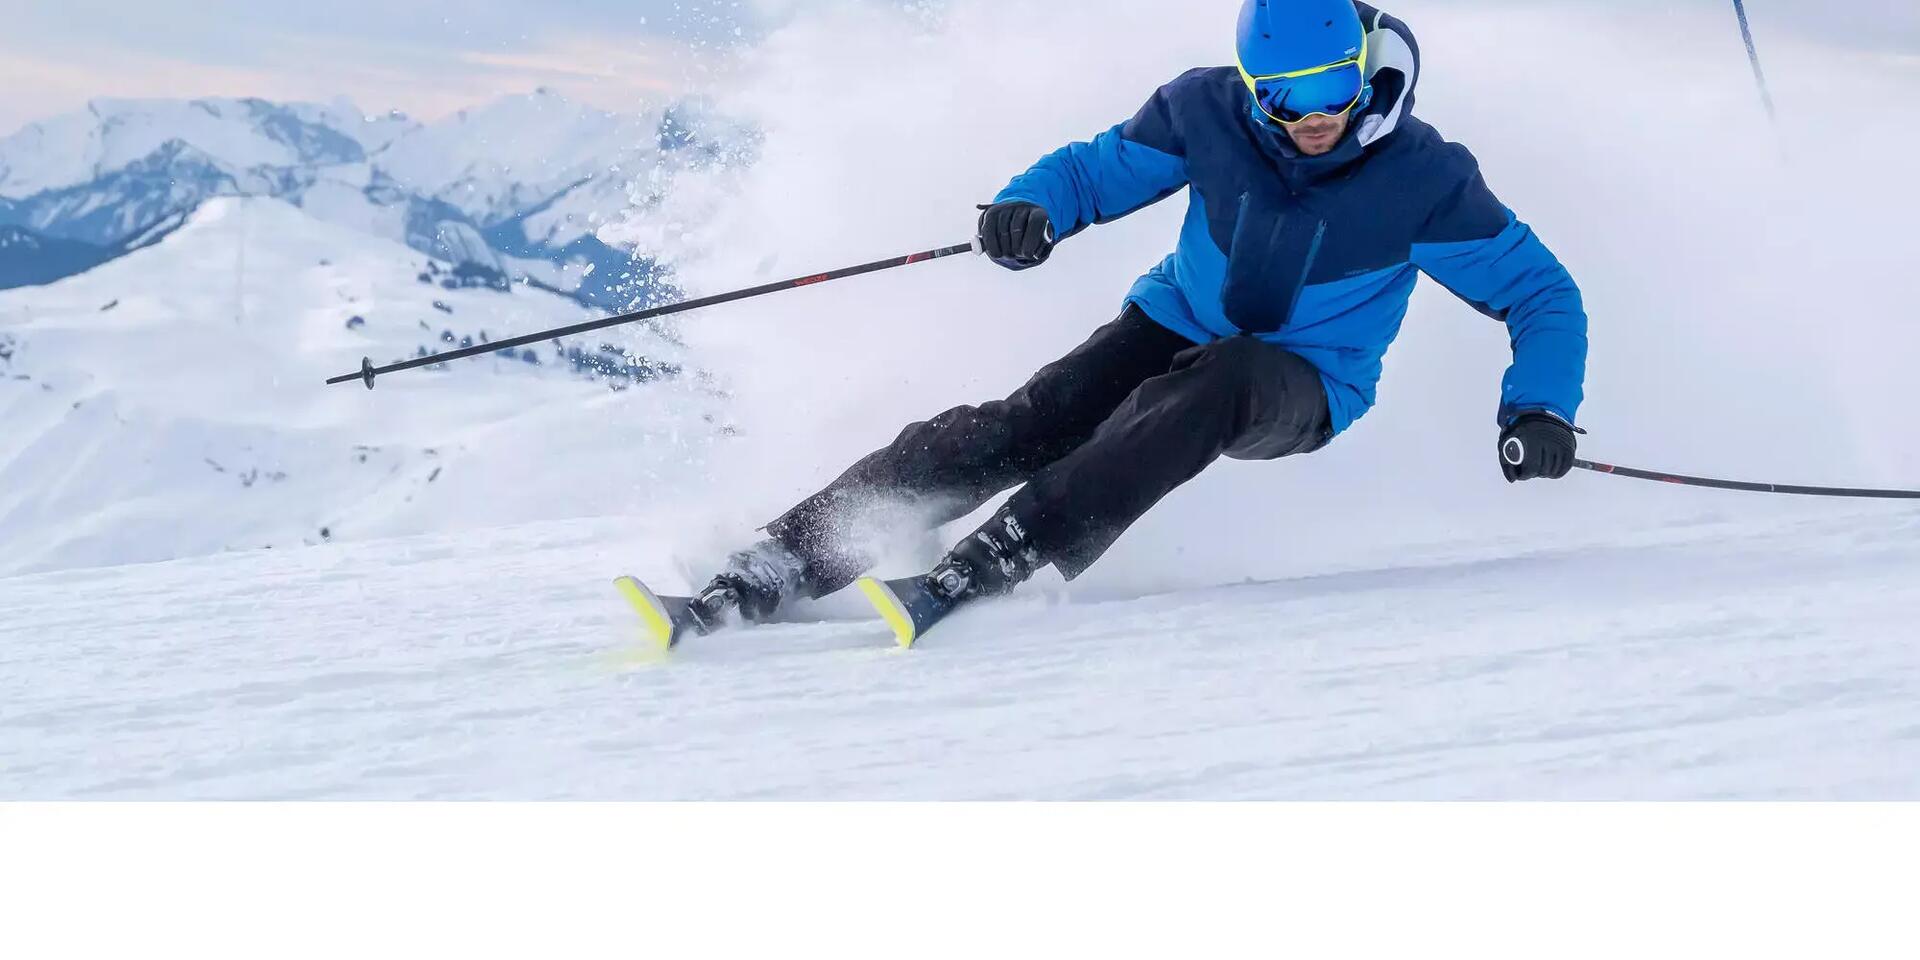 An expert skier making a sharp turn